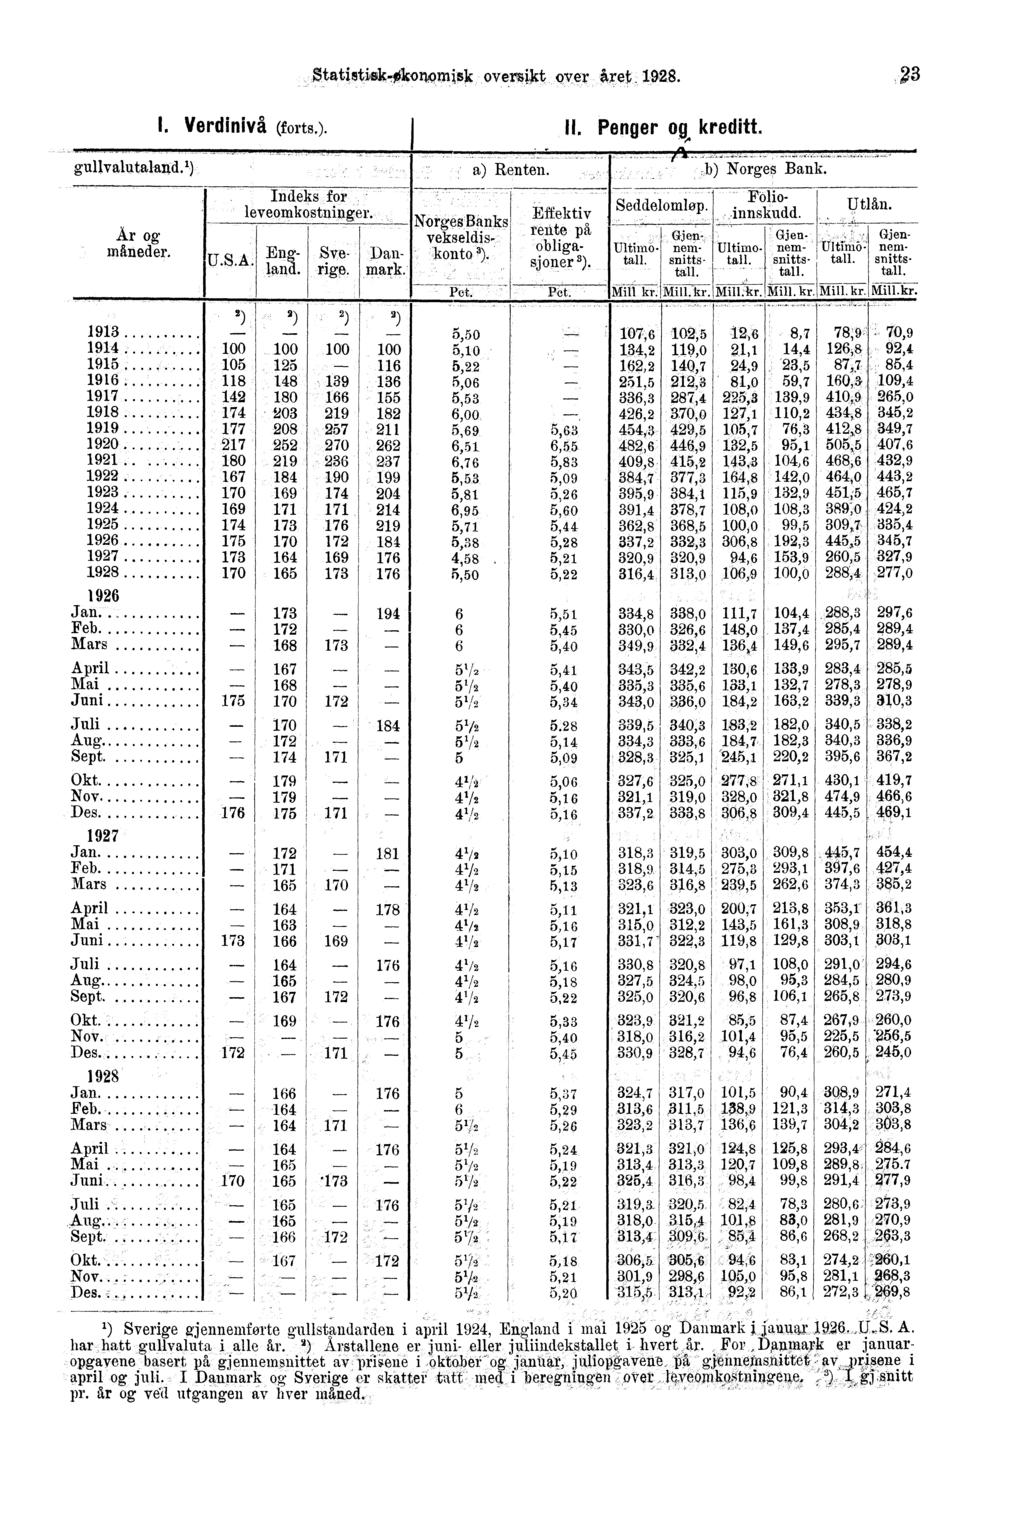 Statistisk-fikonornis1( oversikt over itret 1928. I. Verdinivå (forts.). II. Penger og, kreditt. --., gullvalutaland.') a) Renten., Är og måneder. Indeks for - leveornkostni uger. U.S.A. E,a. _.